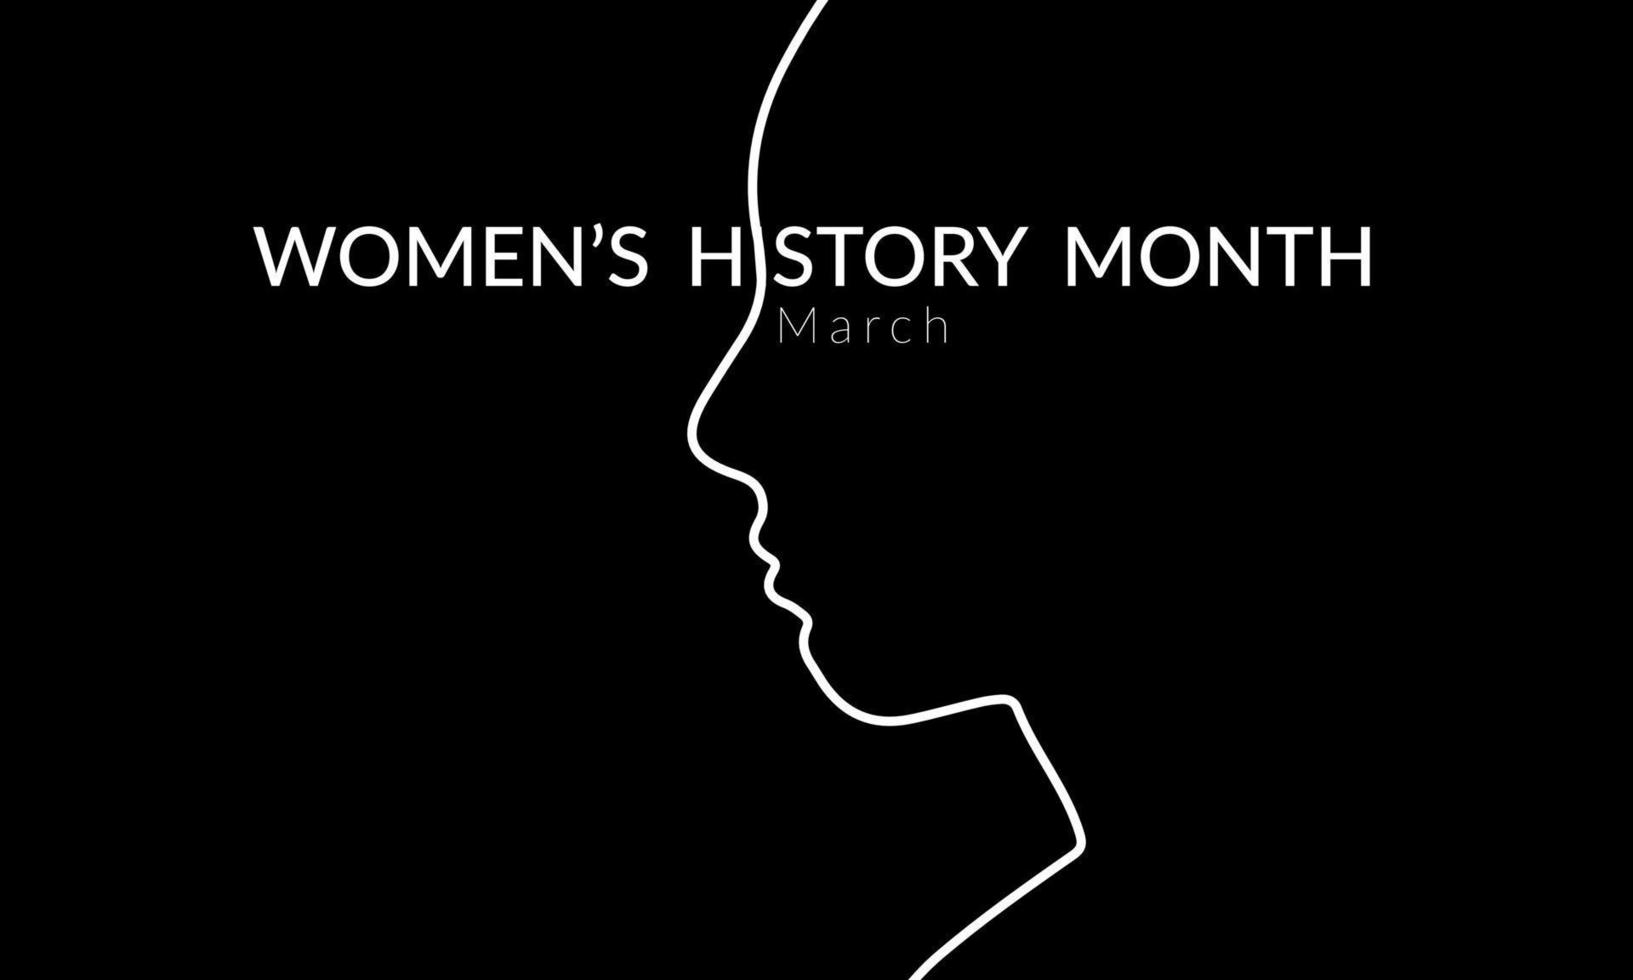 kvinnors historia månad baner i svart och vit minimalistisk stil vektor